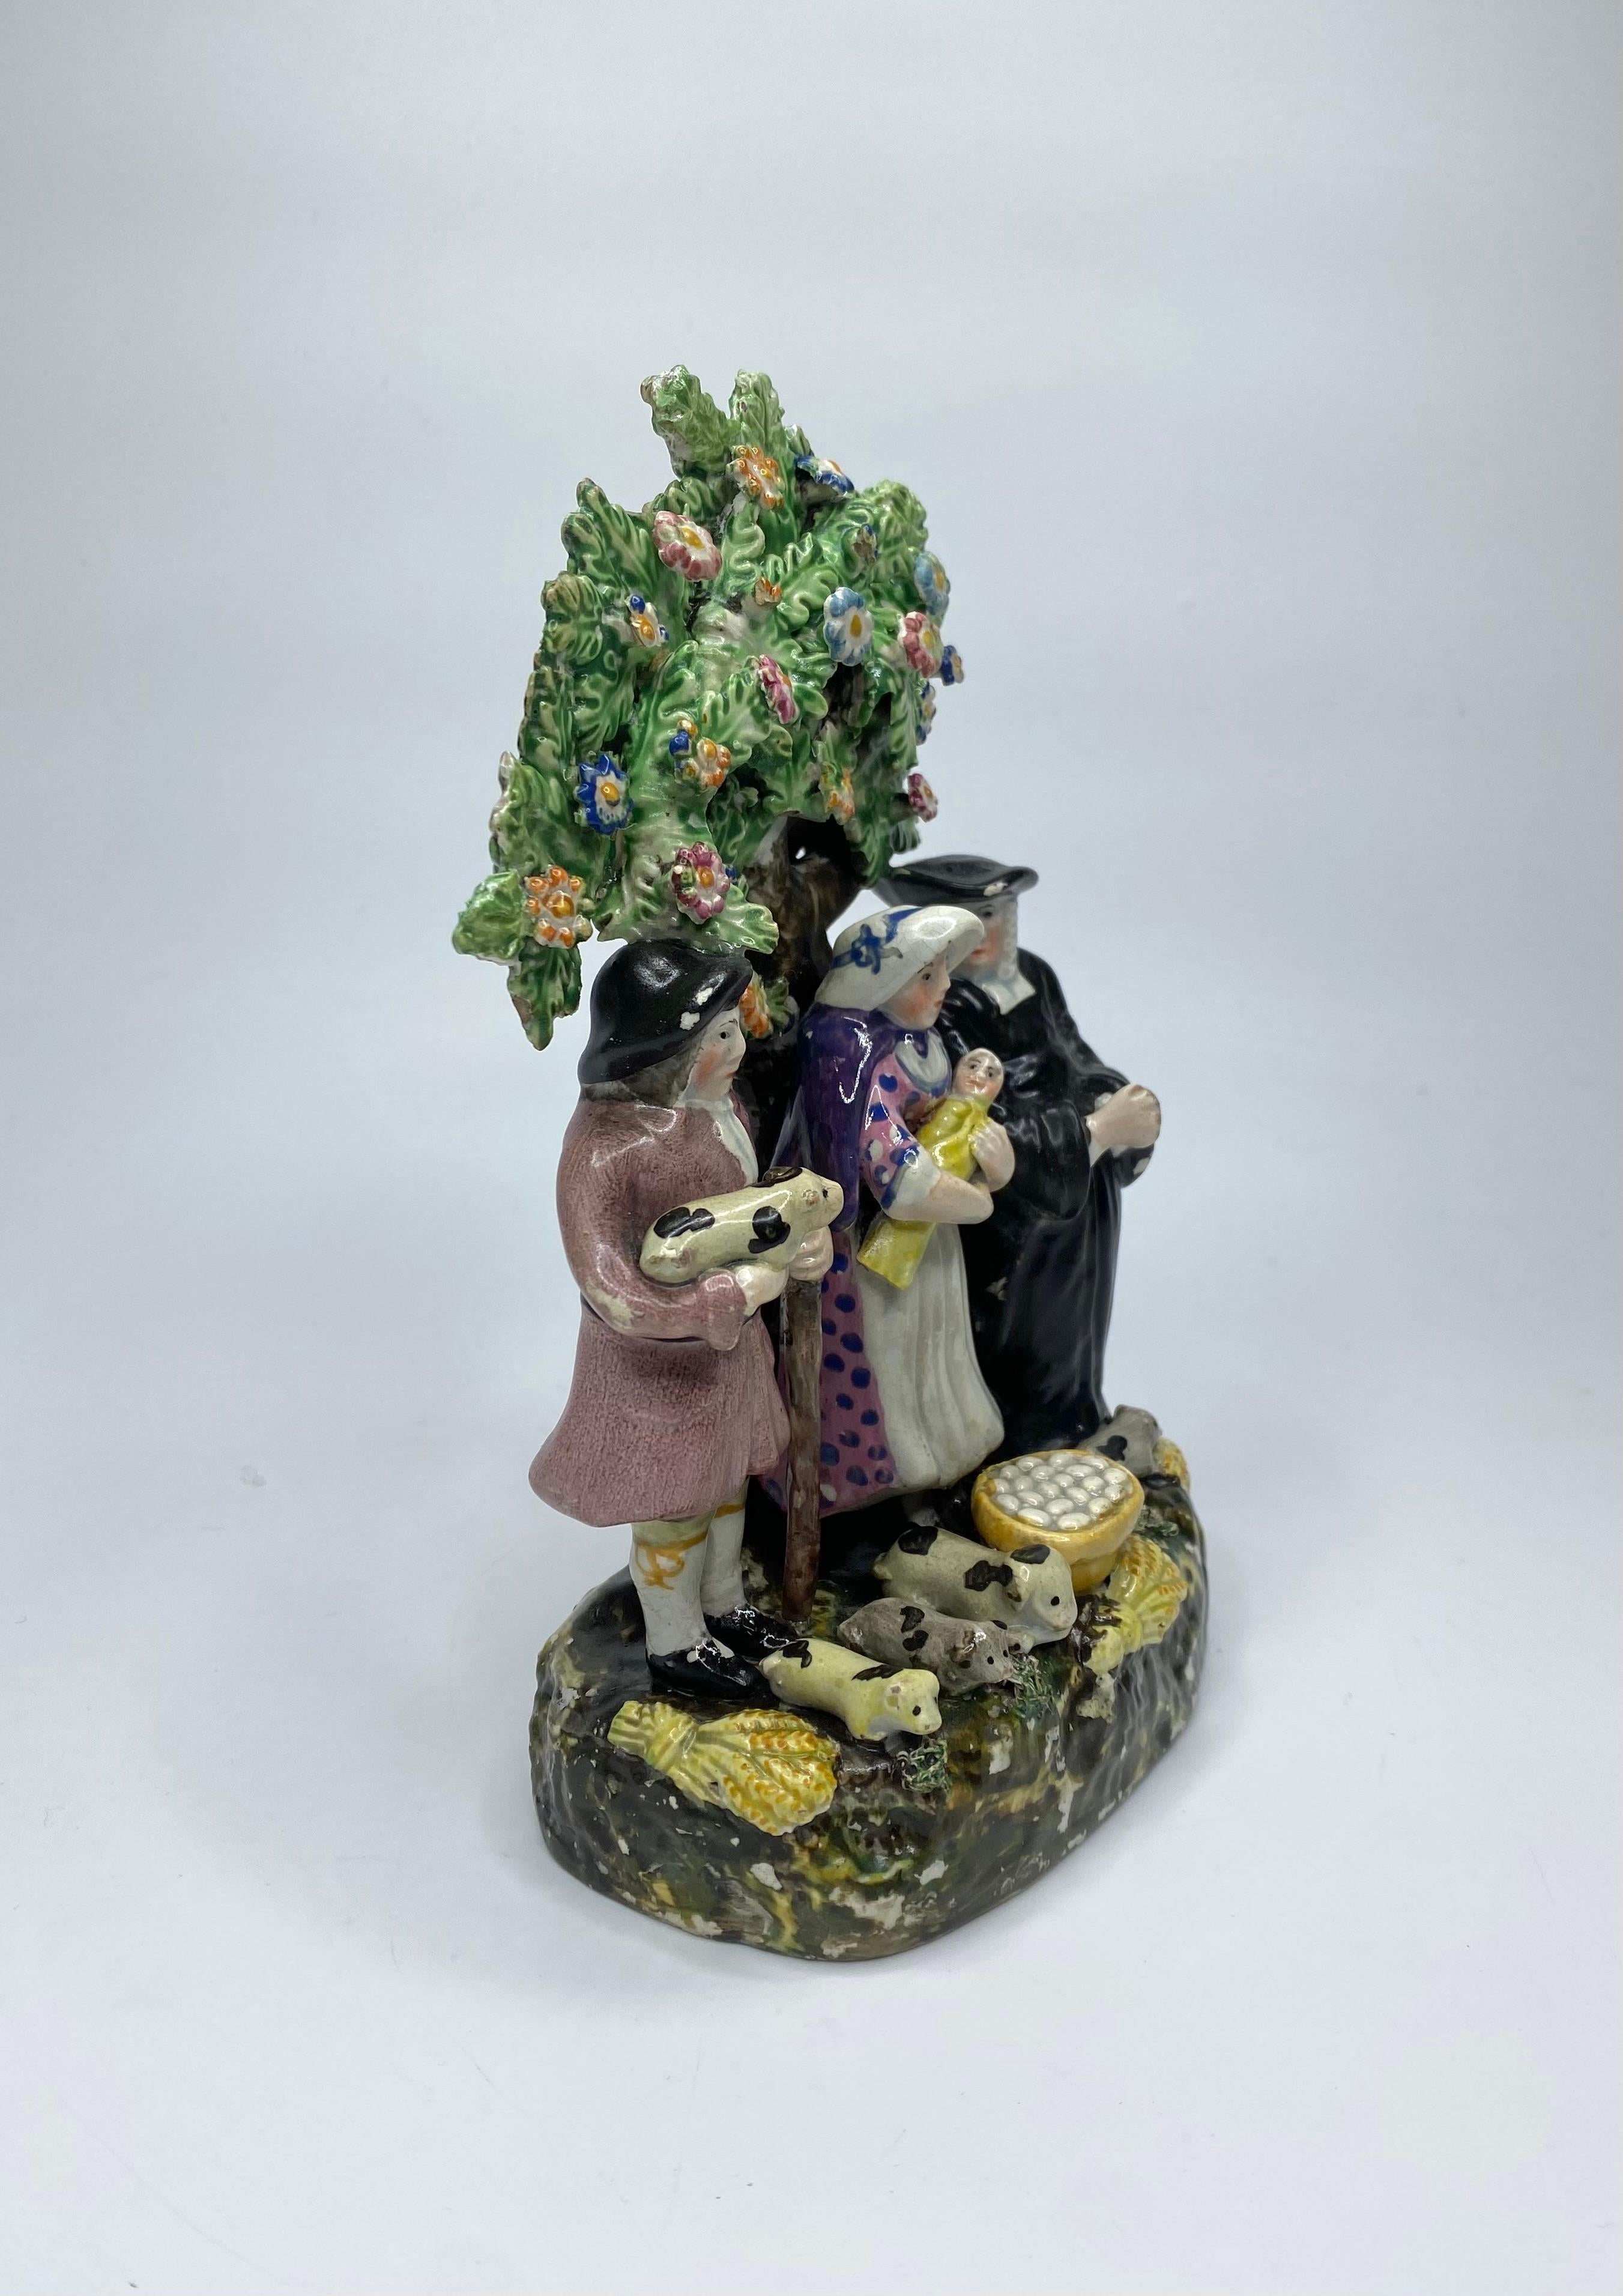 Staffordshire Töpferwaren 'Tithe Pig' Bocage-Gruppe, ca. 1830. Die drei Figuren sind so modelliert, dass sie vor einem Baum stehen. Der Bauer, der ein Schwein hält, seine Frau, die ihr Baby hält, und der Pfarrer, der ihnen mit betenden Händen